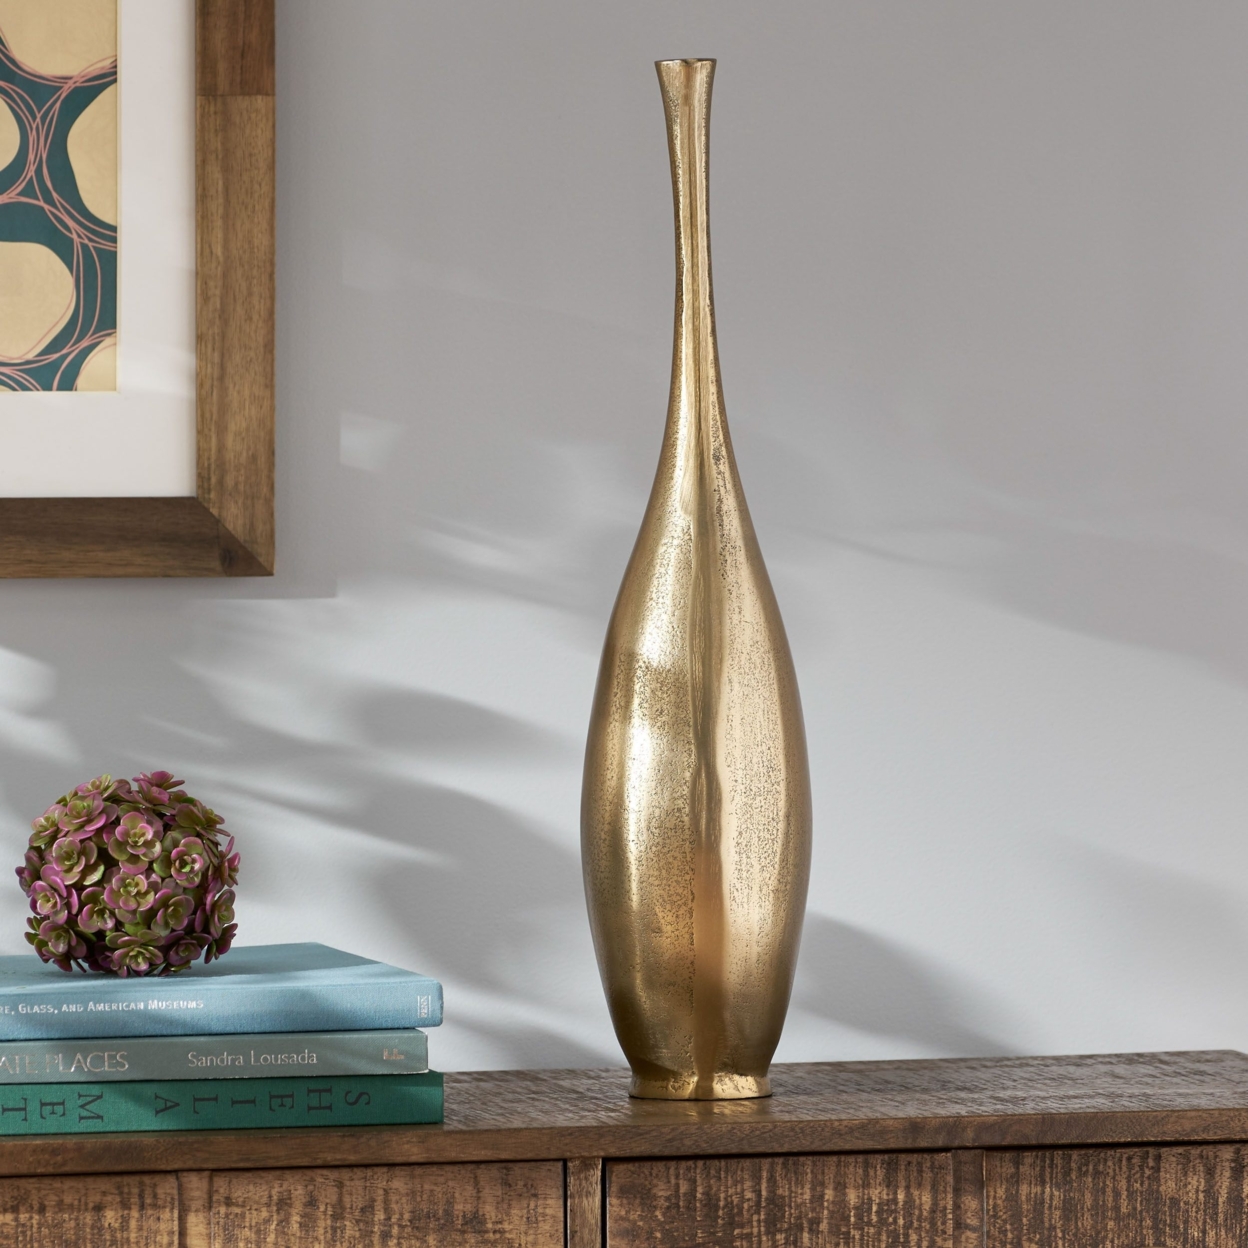 Elko Handcrafted Aluminum Decorative Bottle Vase - Medium